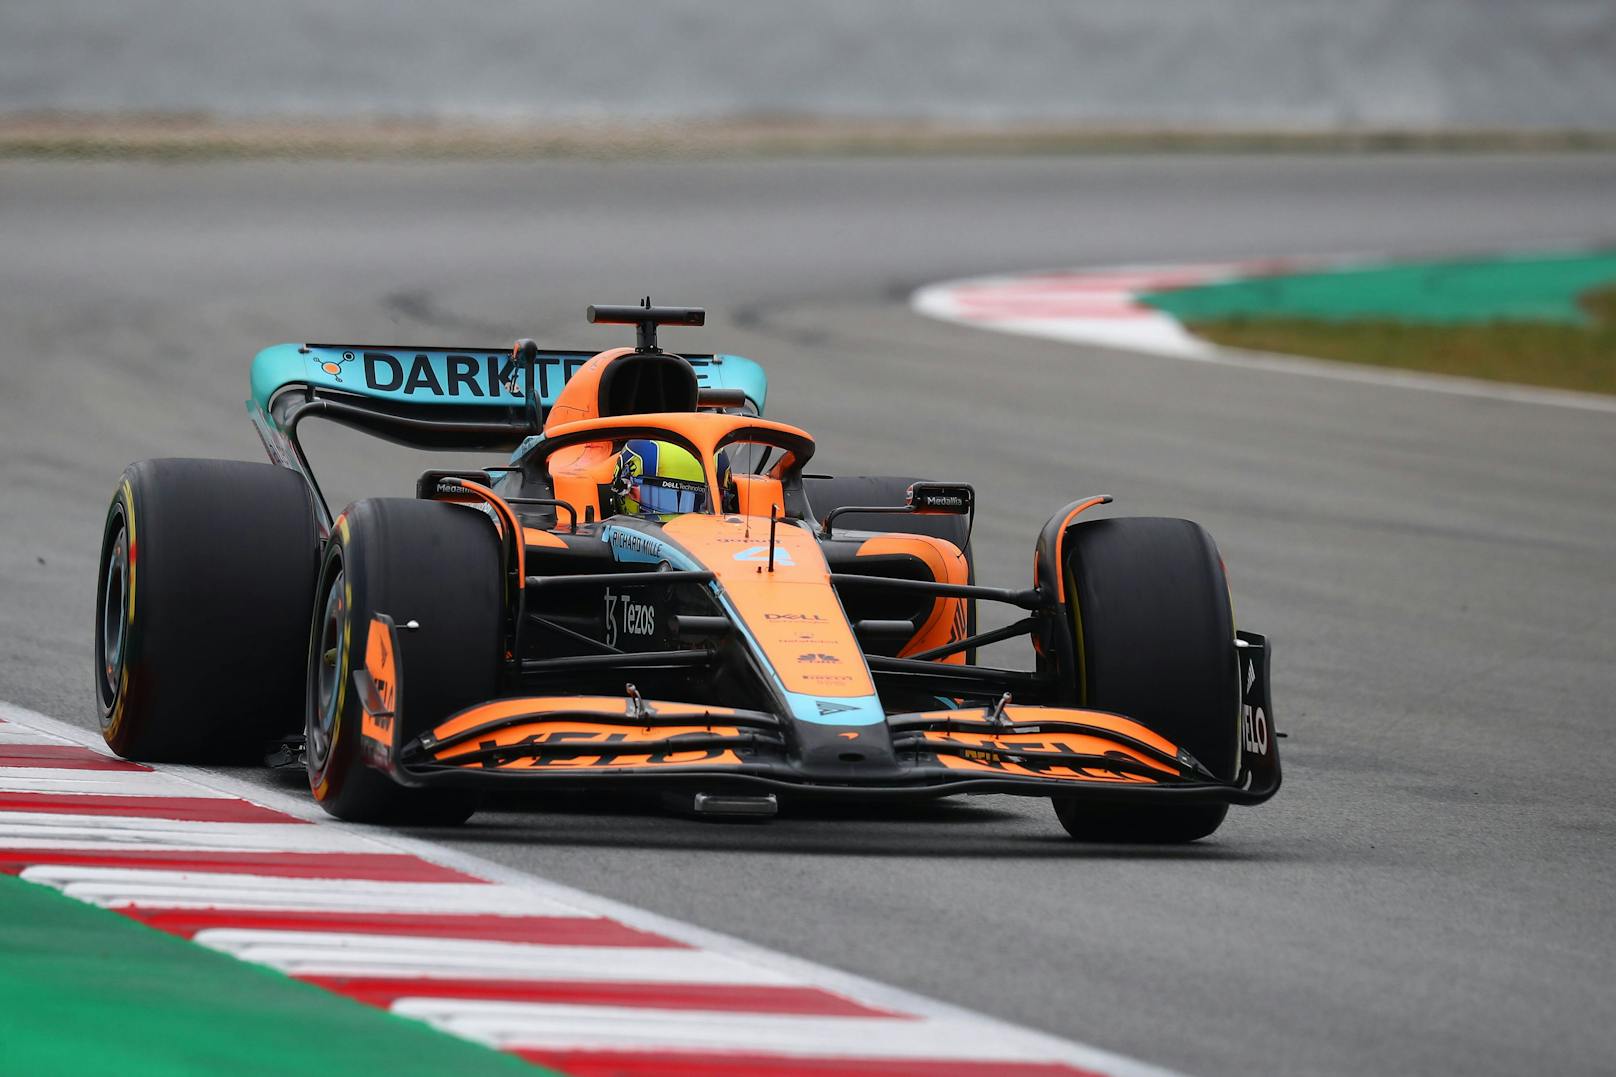 Die McLaren-Stars Lando Norris und Daniel Ricciardo fahren in Papaya-Babyblau